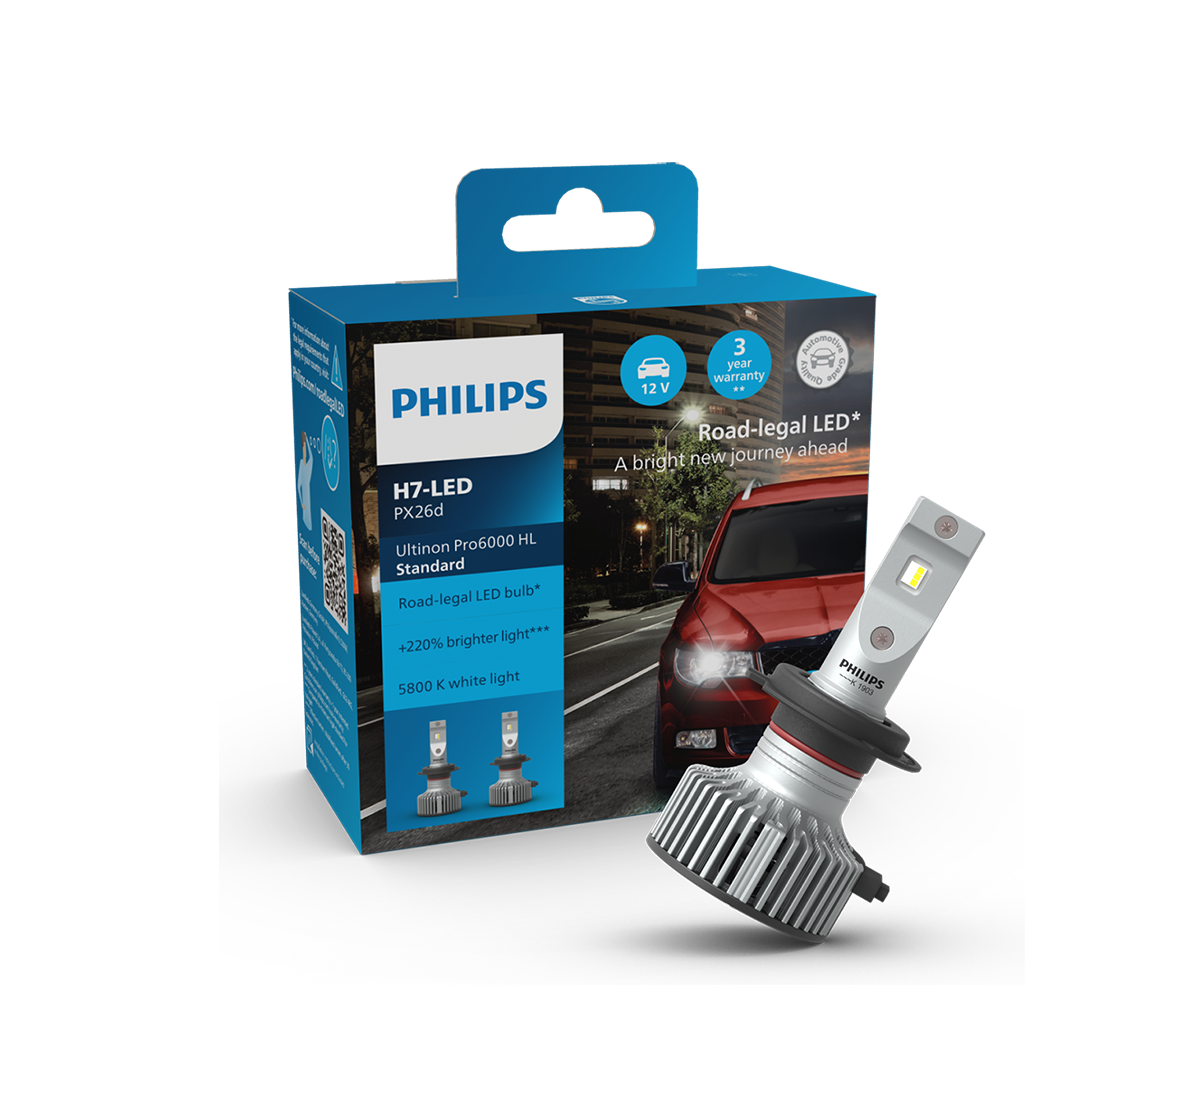 LED zugelassen H4 Pro6001 - PEUGEOT partner - Philips Ultinon